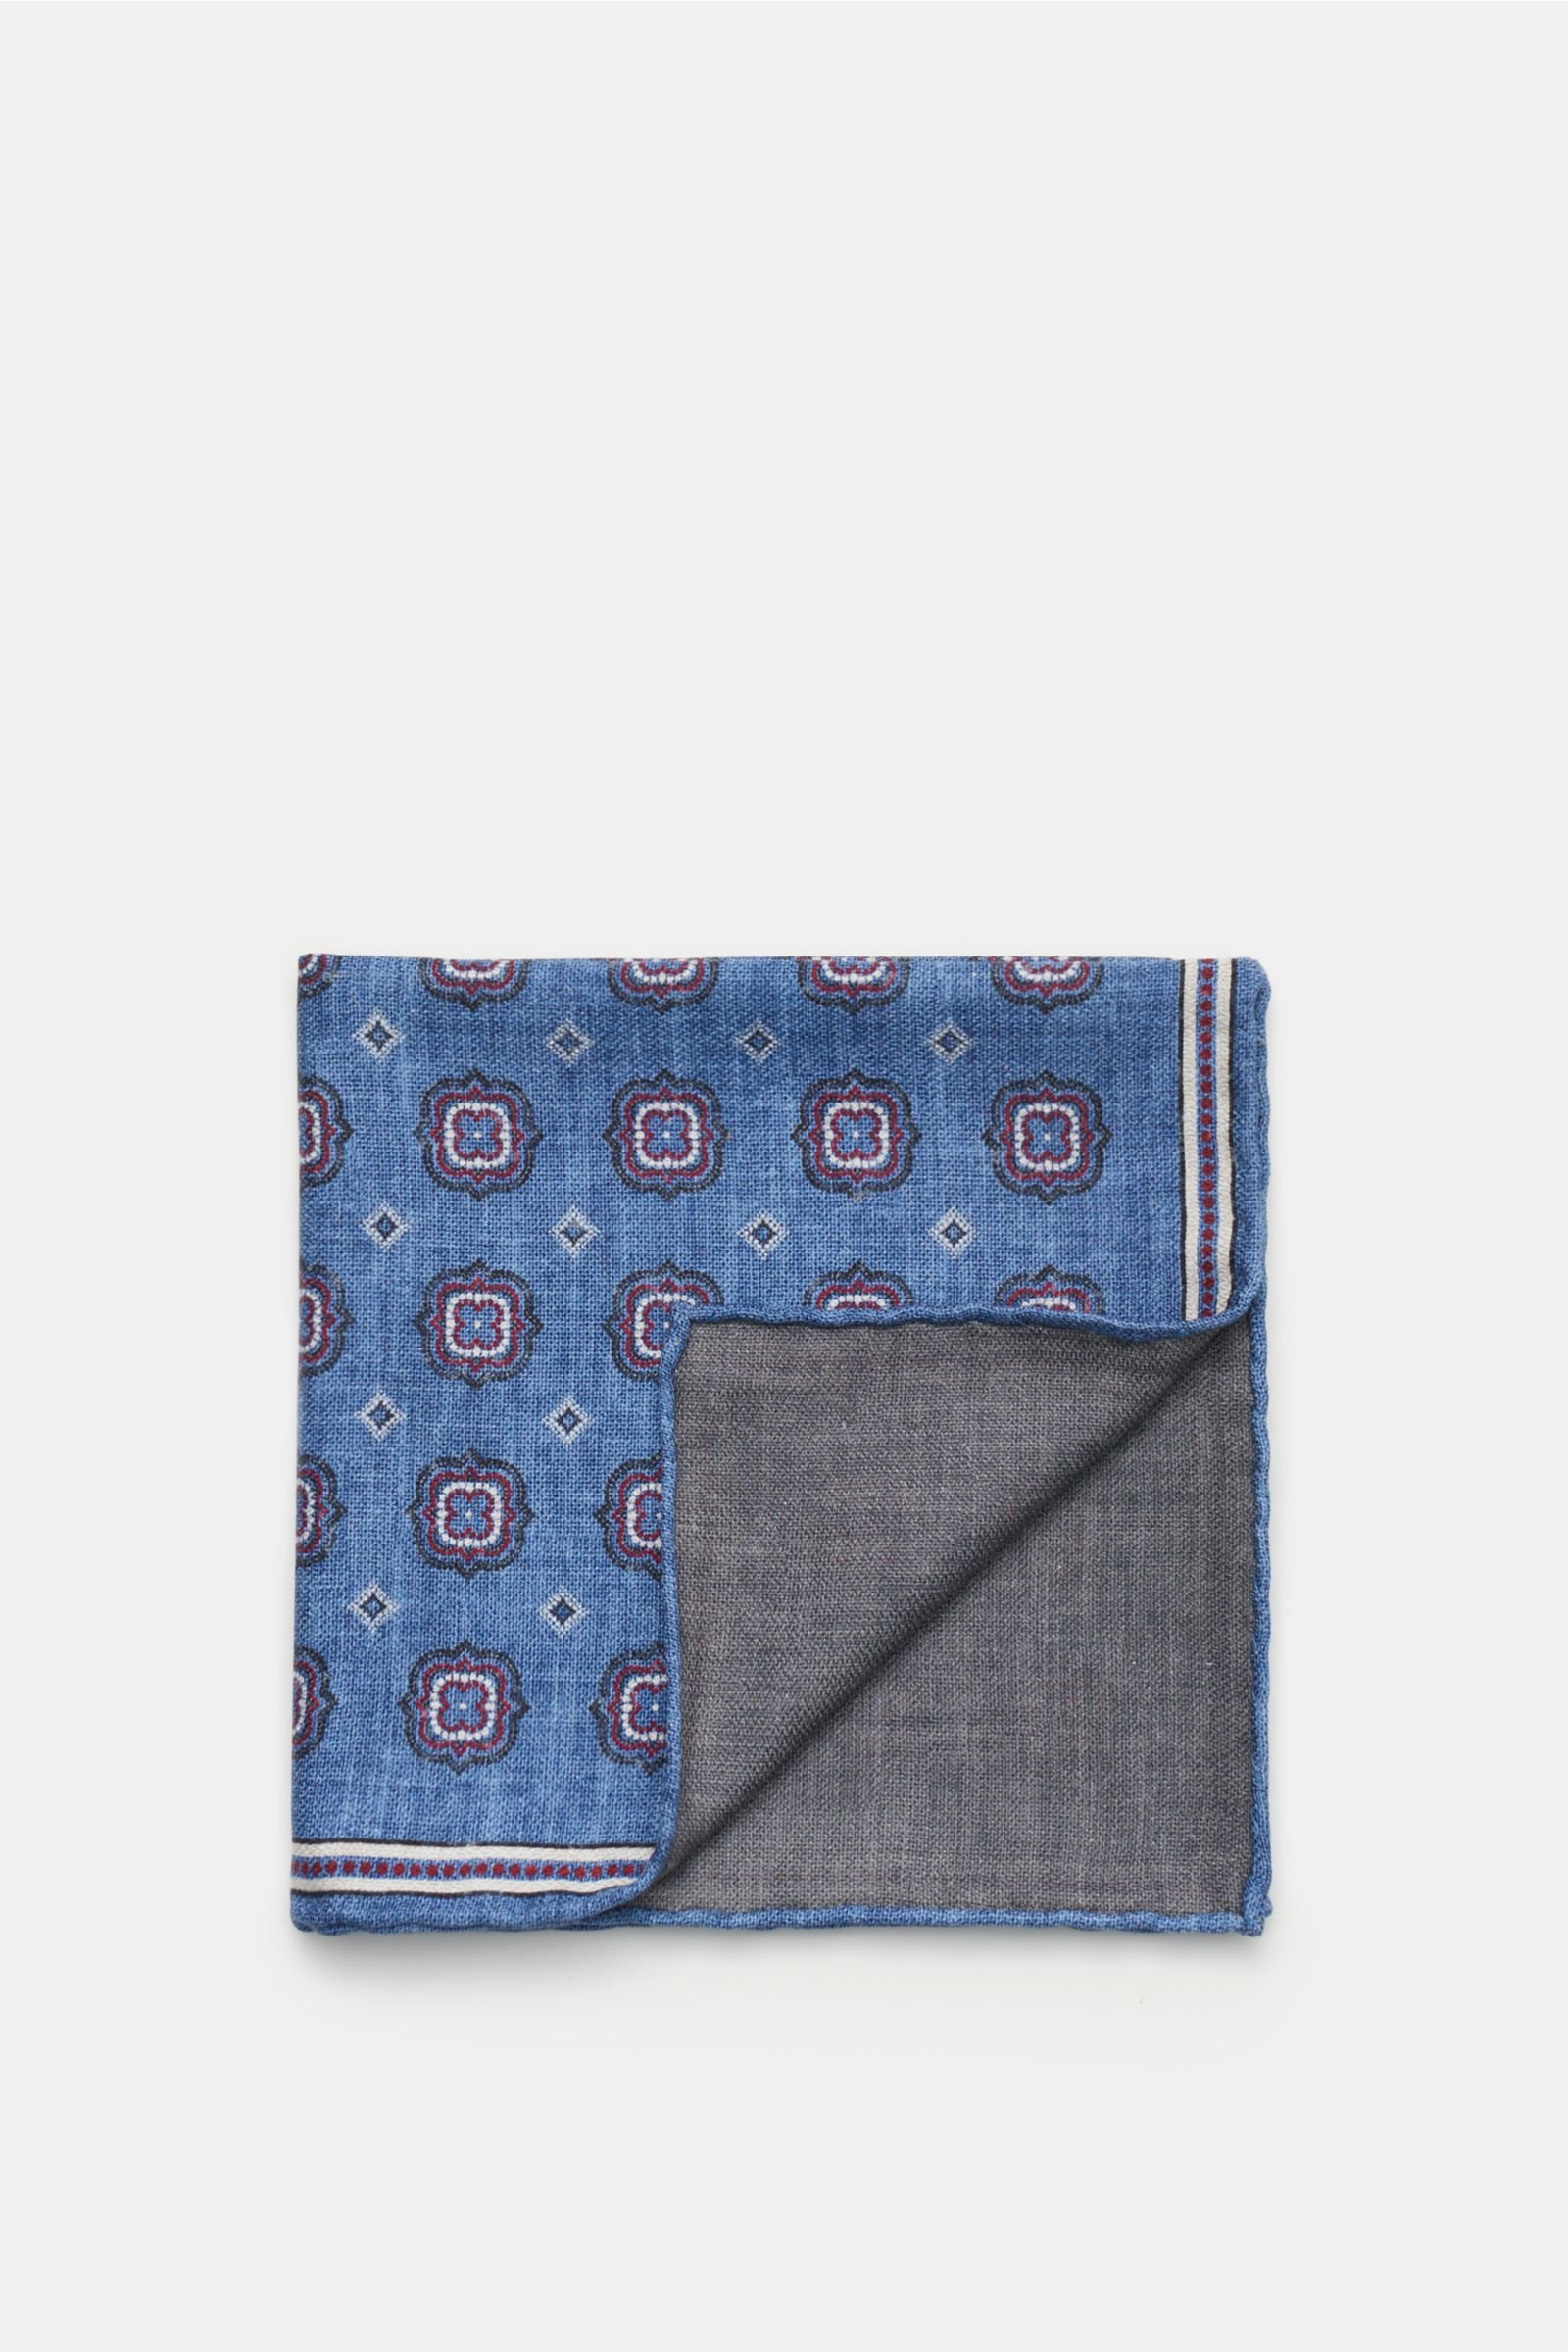 Pocket square grey-blue patterned